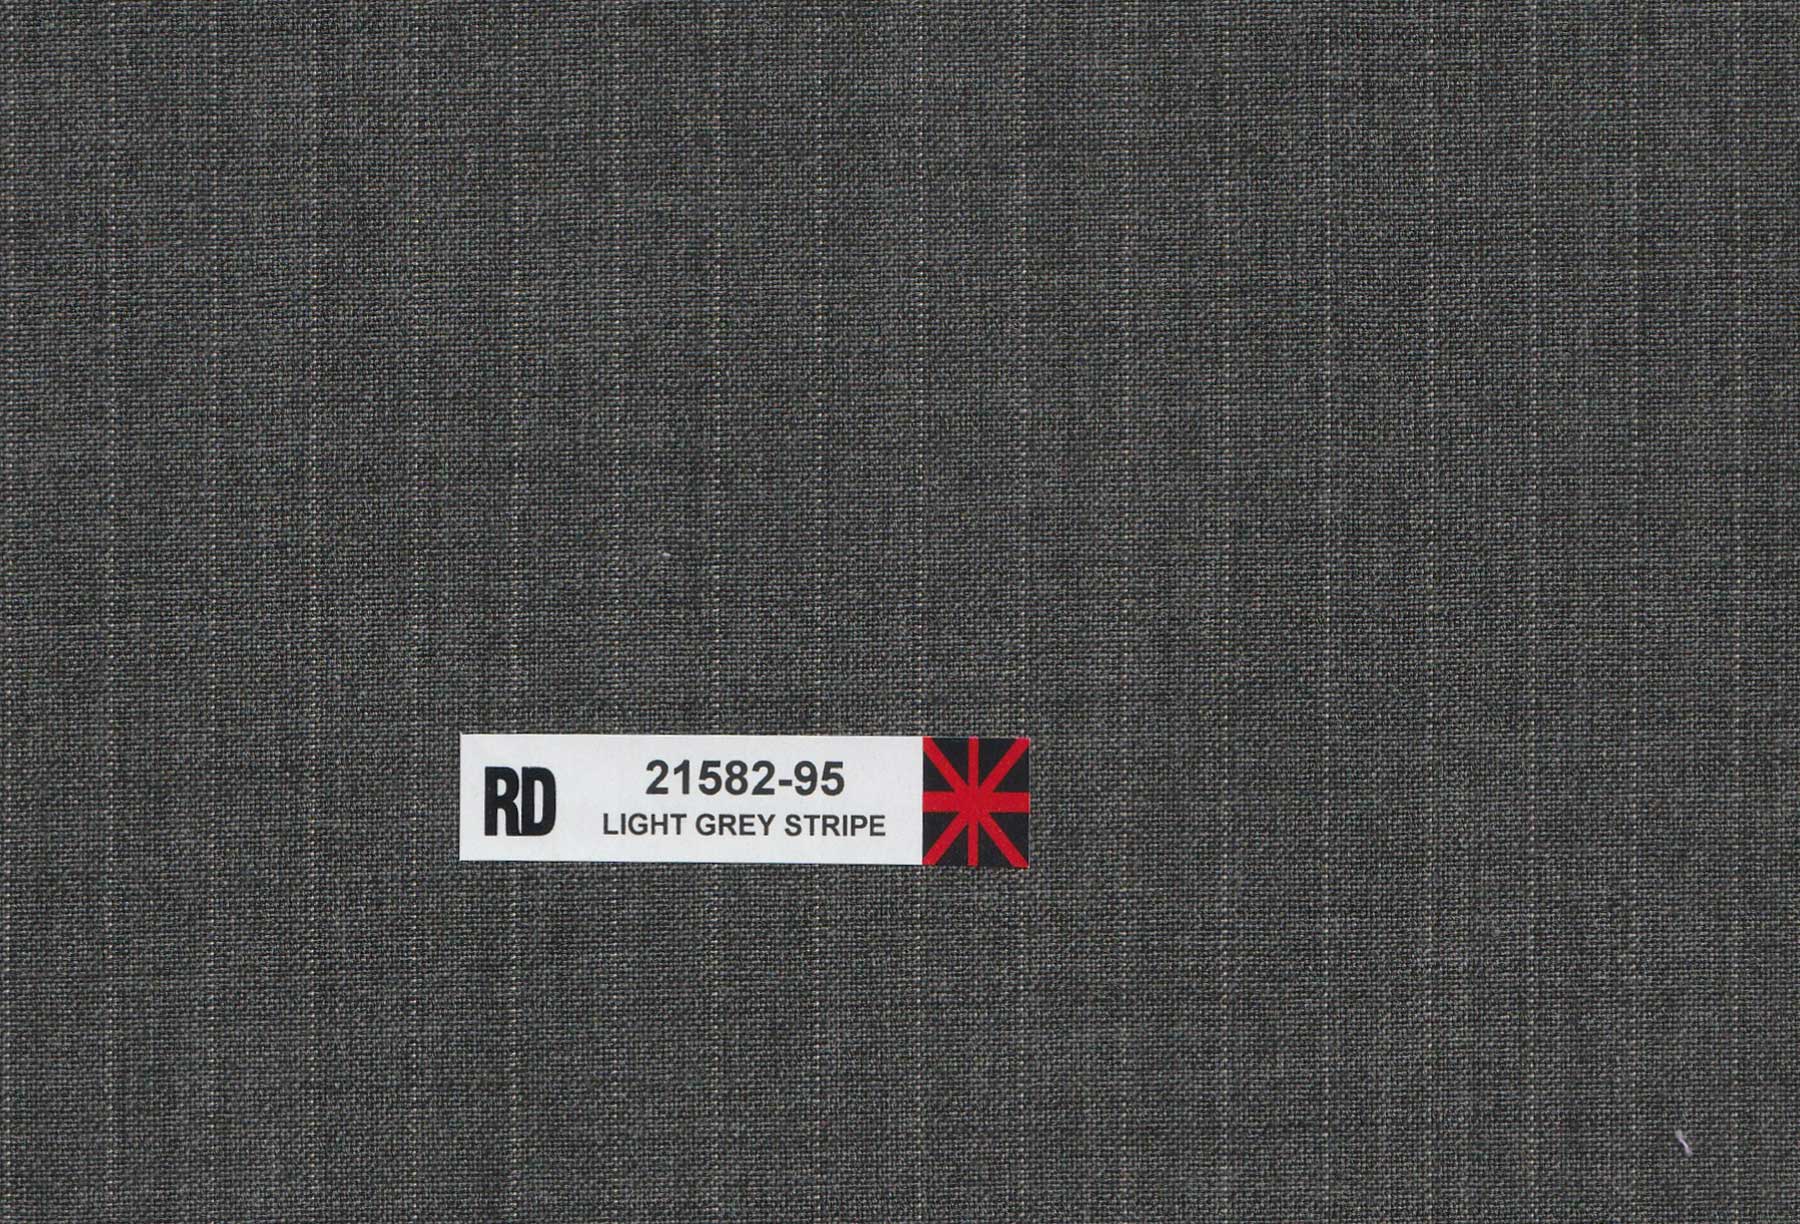 RD 21582-95 Light Grey Stripe